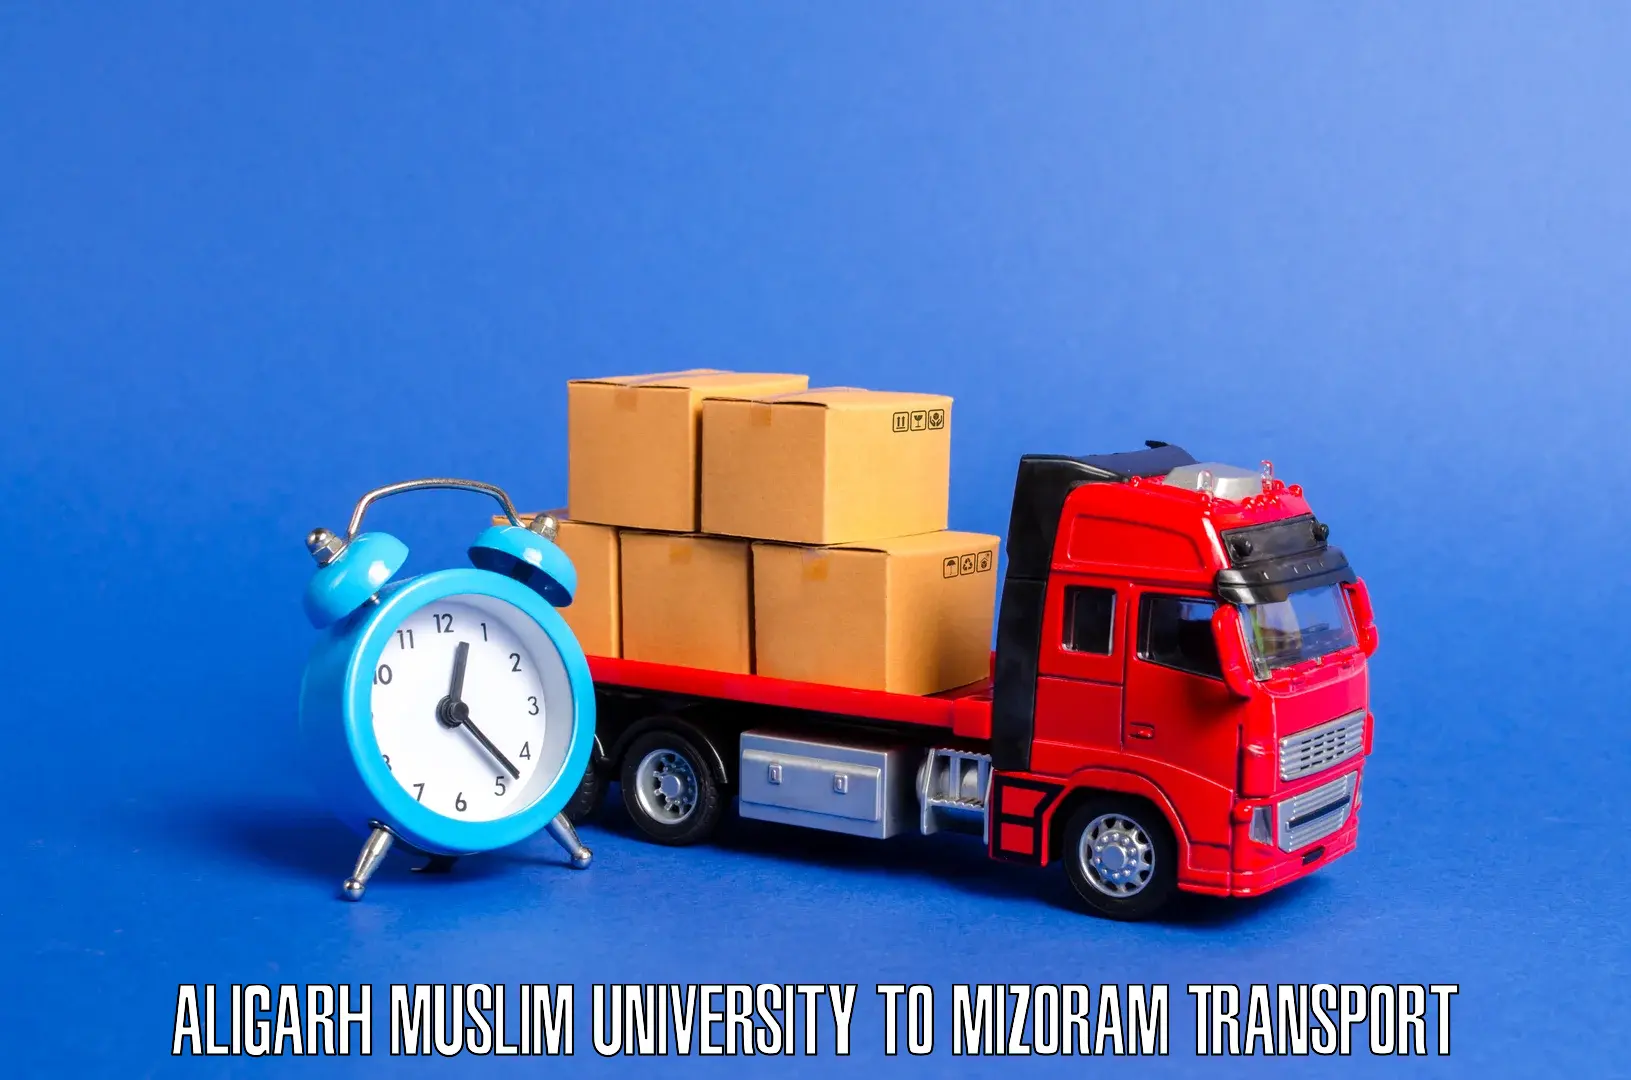 Door to door transport services Aligarh Muslim University to NIT Aizawl